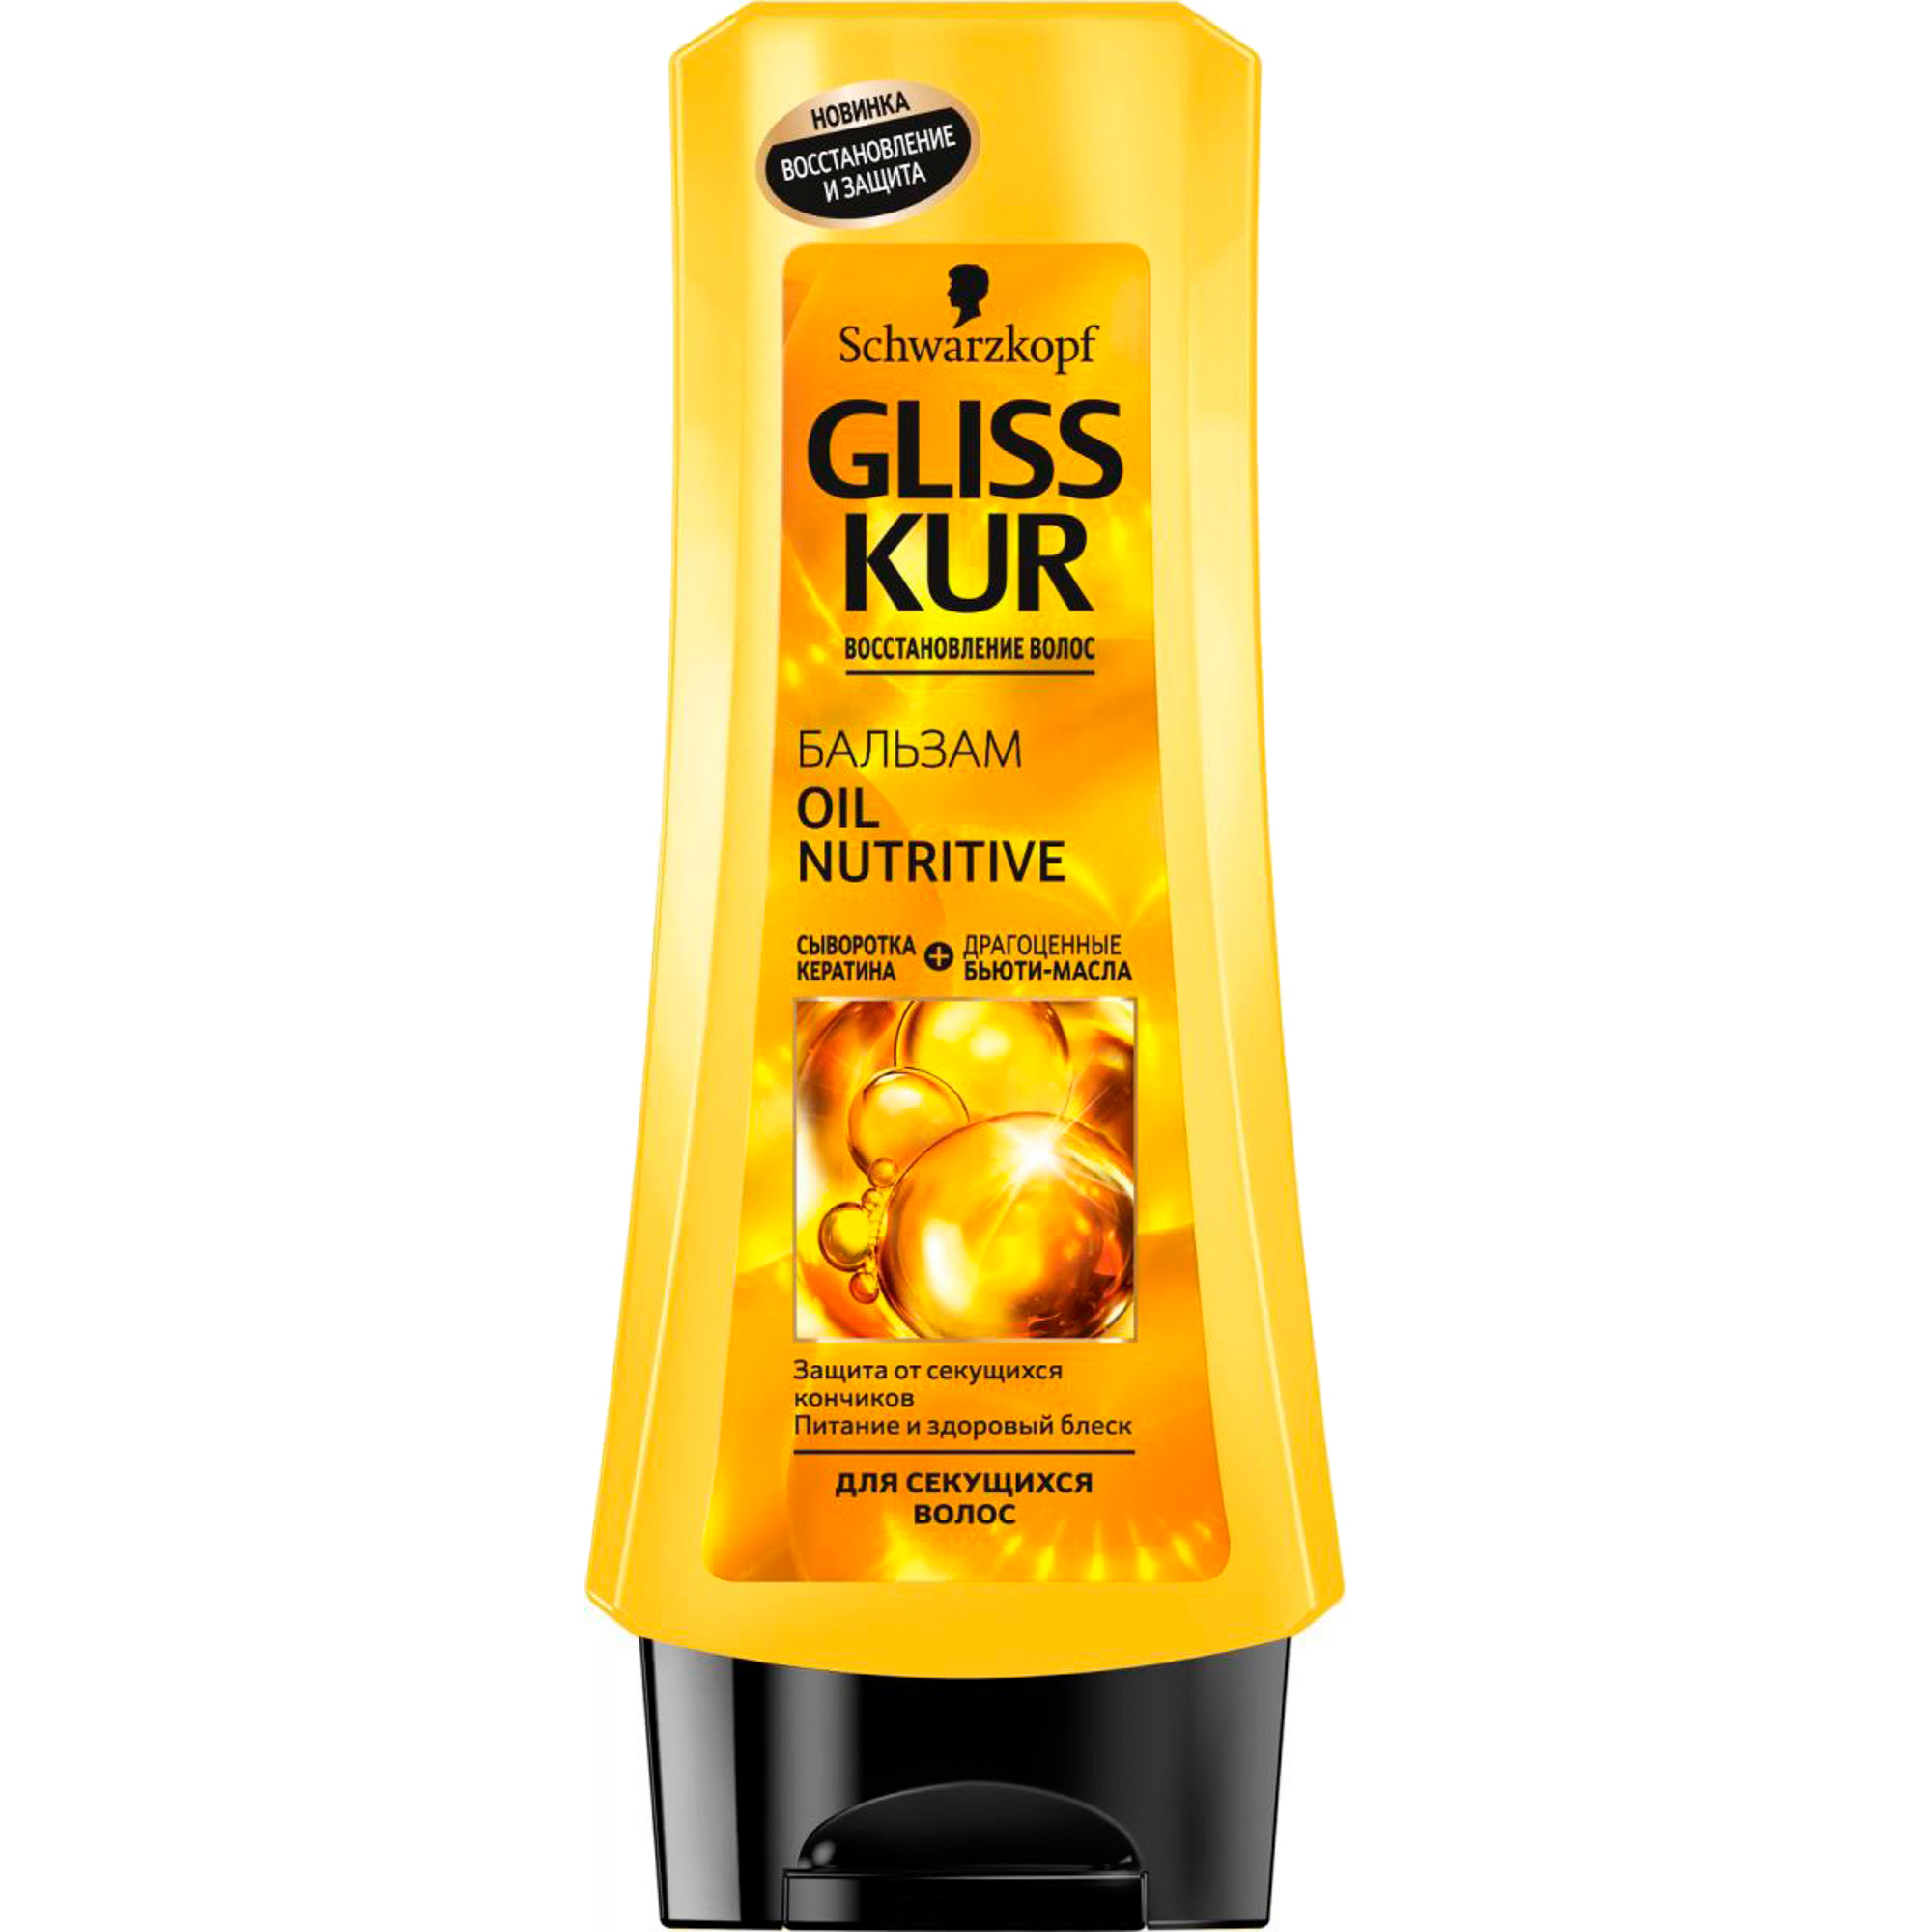 Бальзам GLISS KUR Oil Nutritive 200 мл gliss kur бальзам для волос oil nutritive